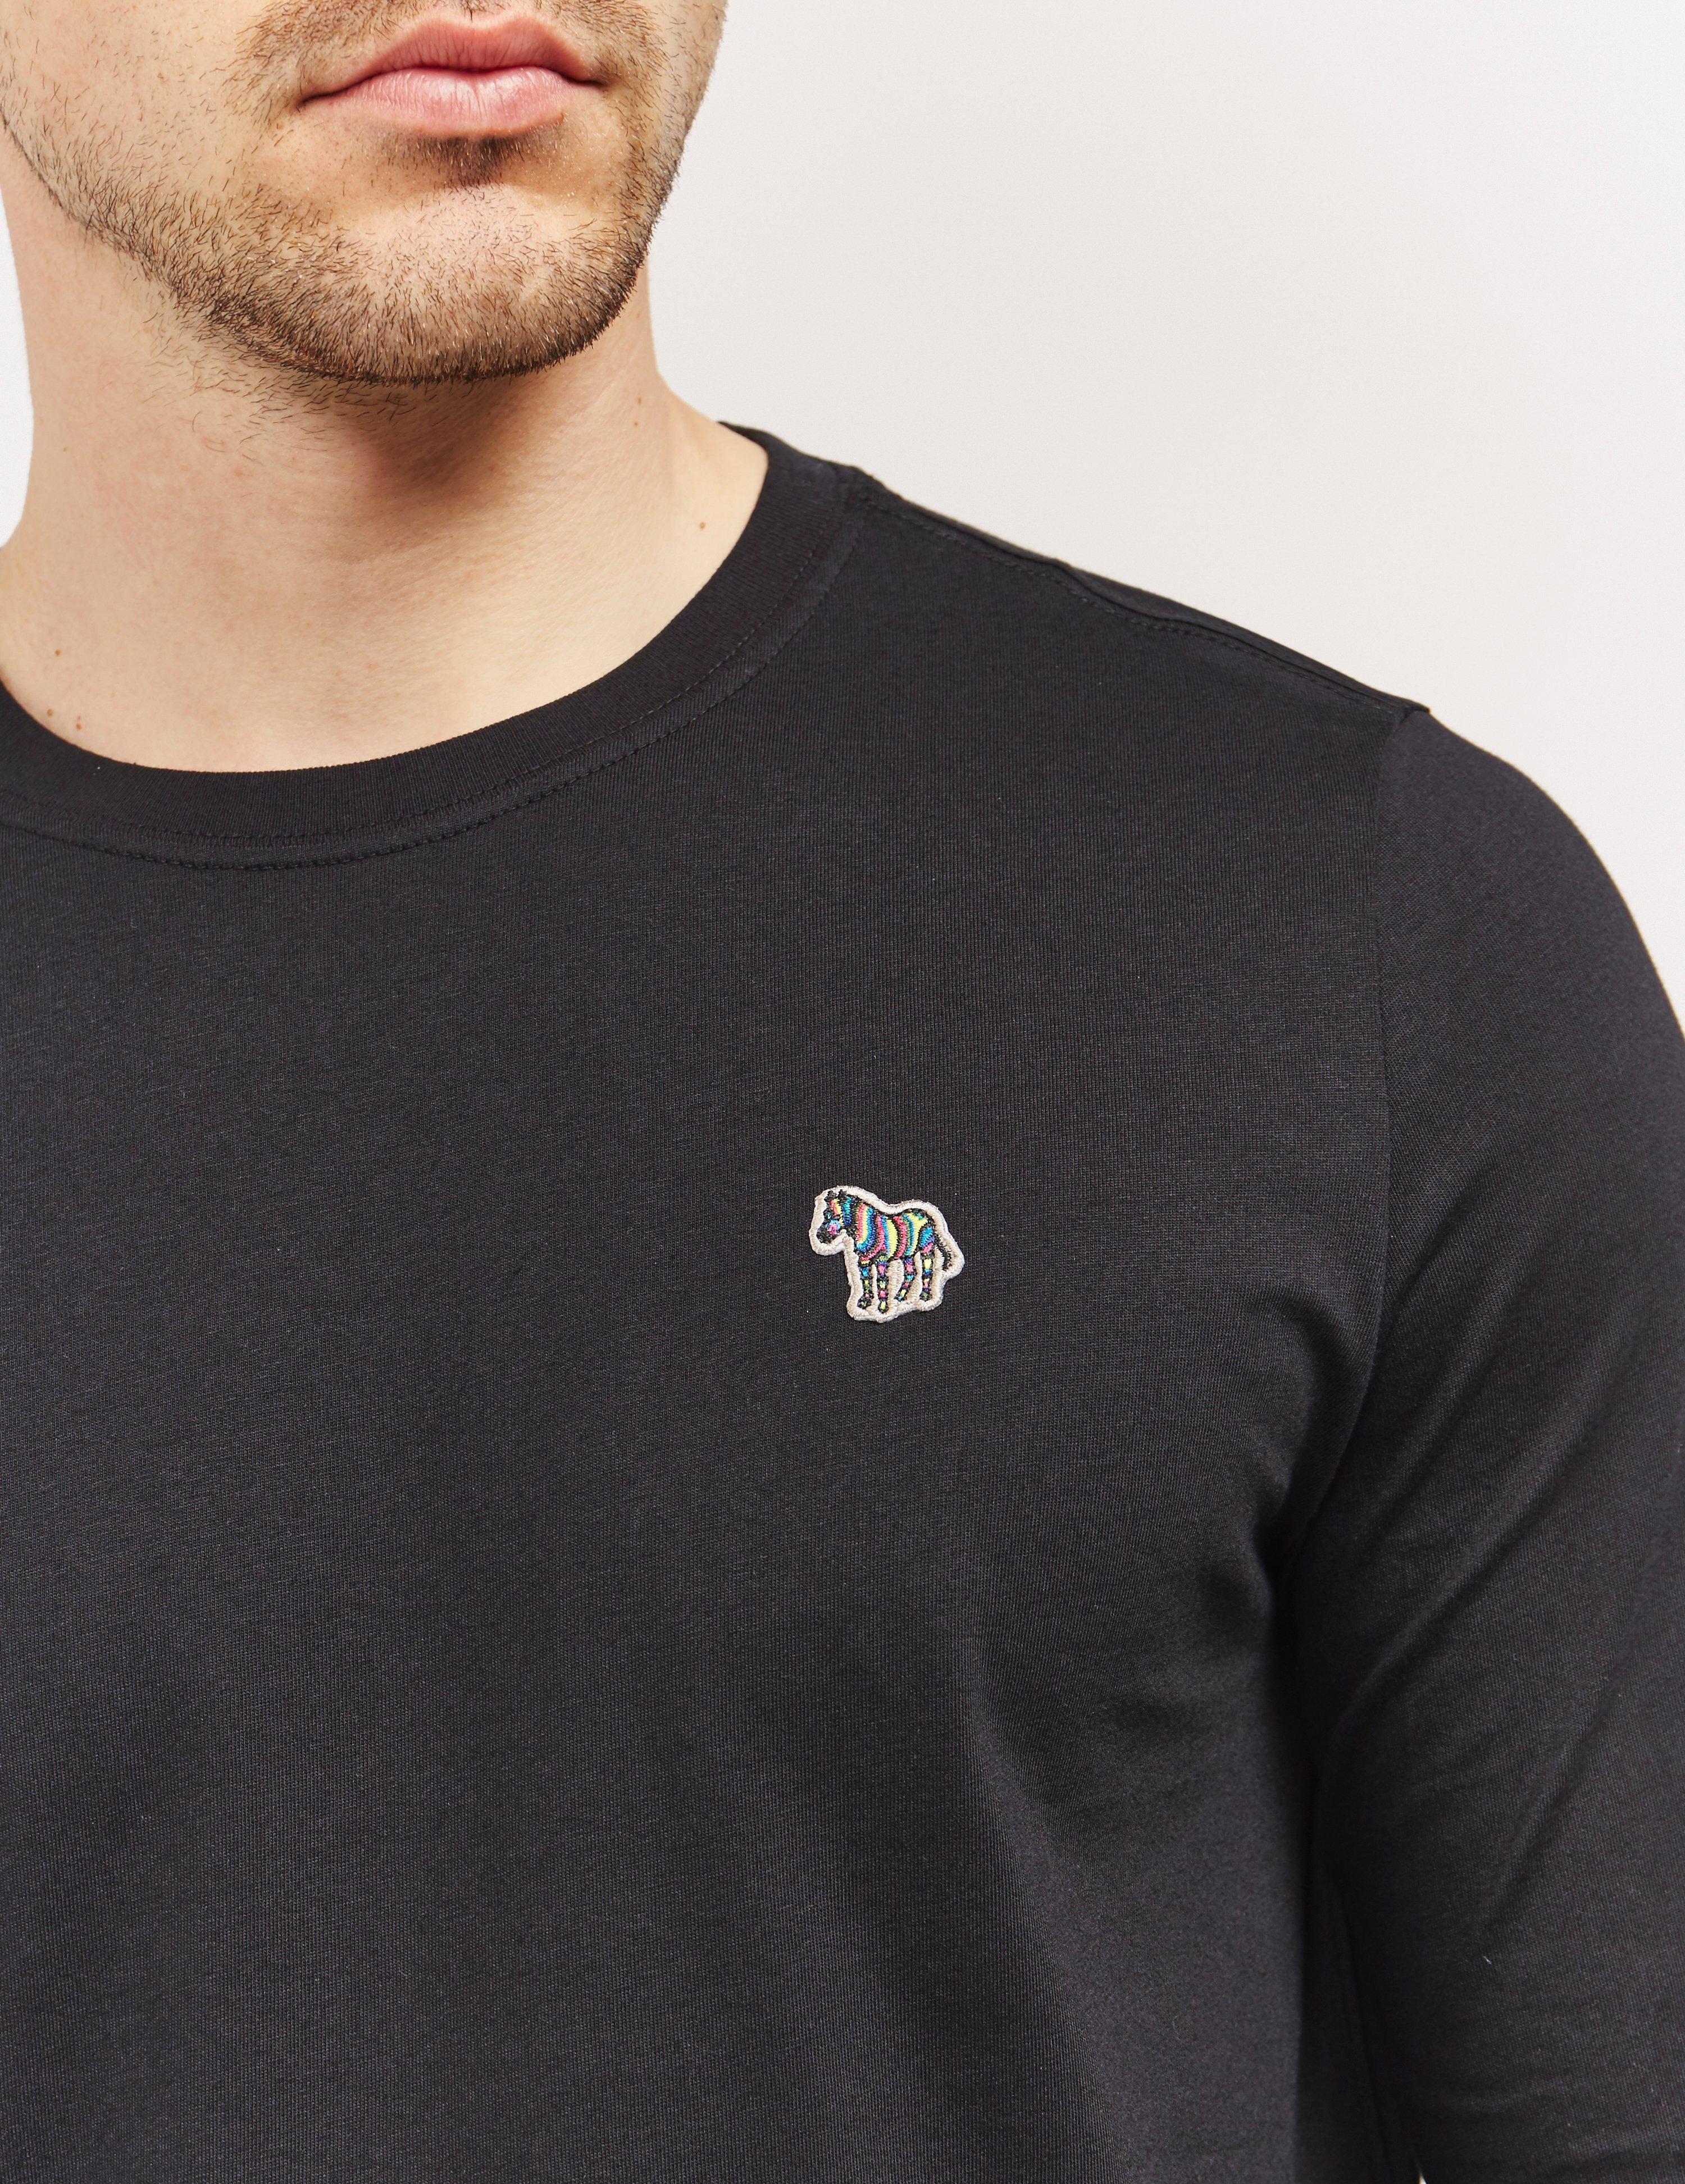 Lyst - Paul Smith Zebra Long Sleeve T-shirt in Black for Men